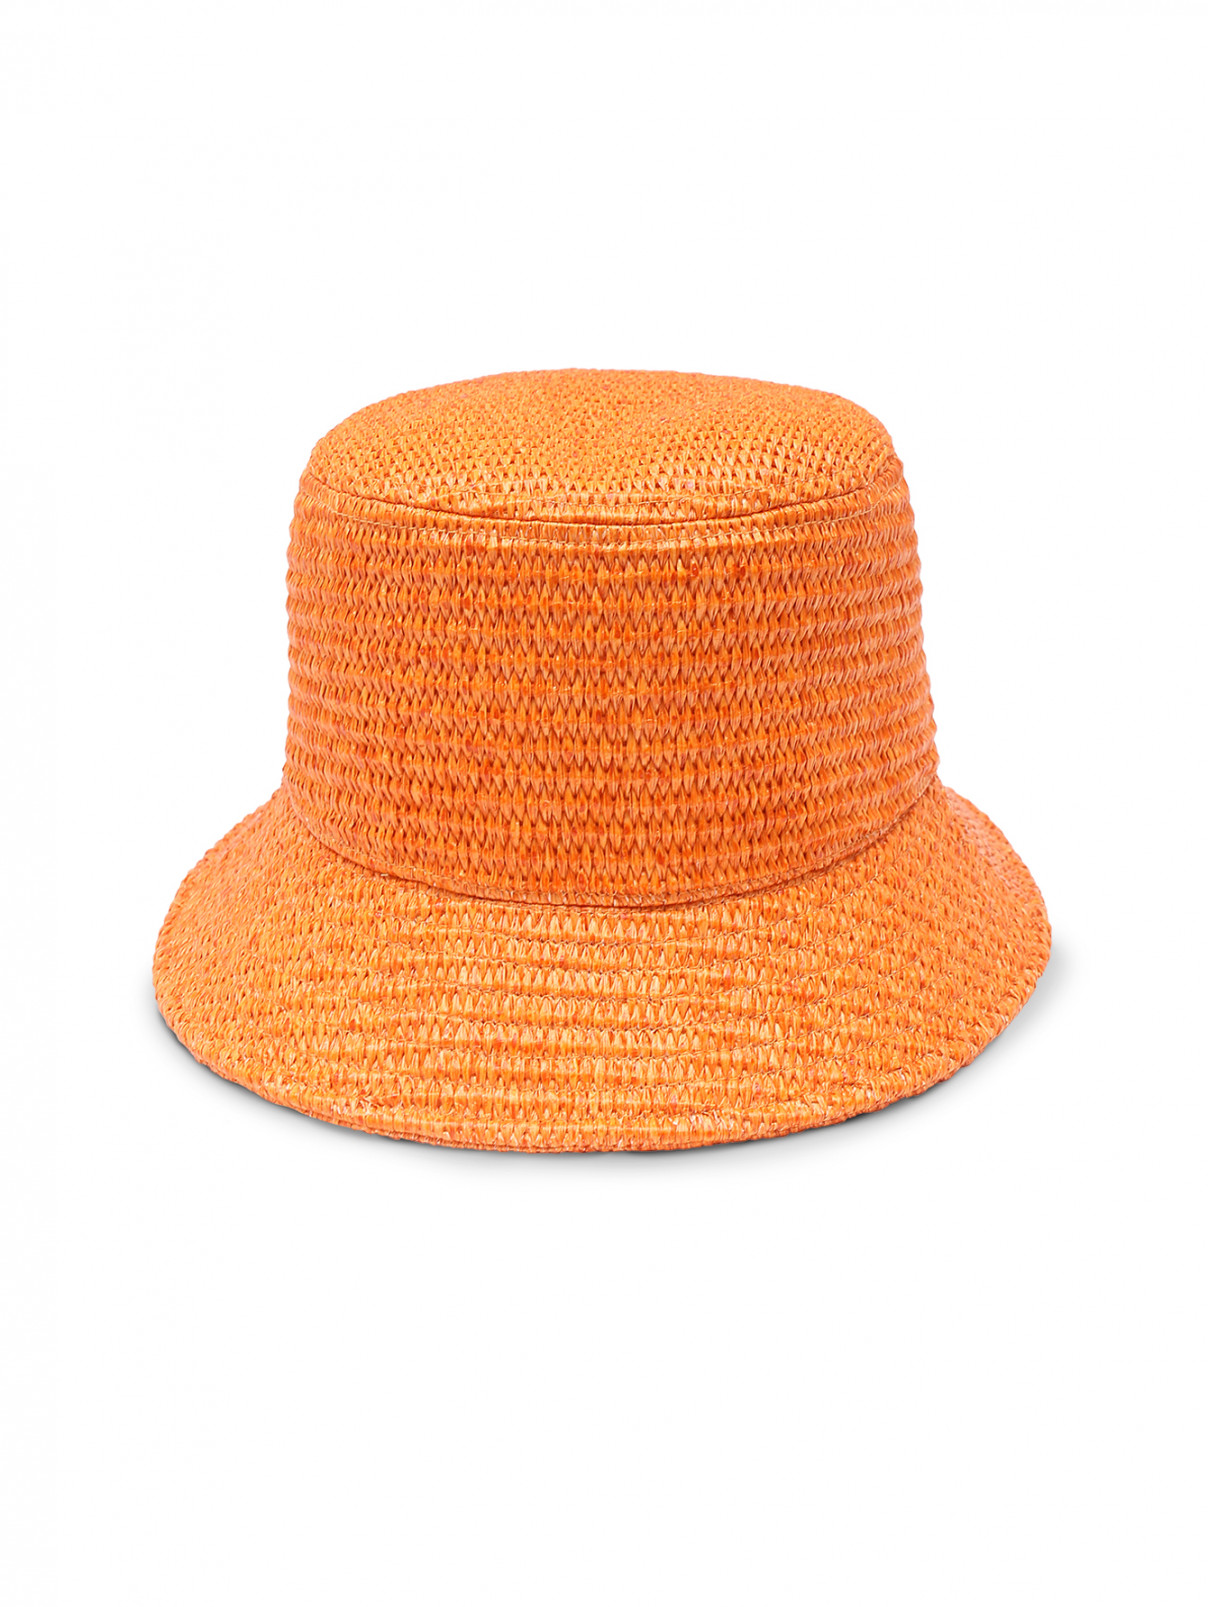 Шляпа плетеная с узкими полями Weekend Max Mara  –  Общий вид  – Цвет:  Оранжевый